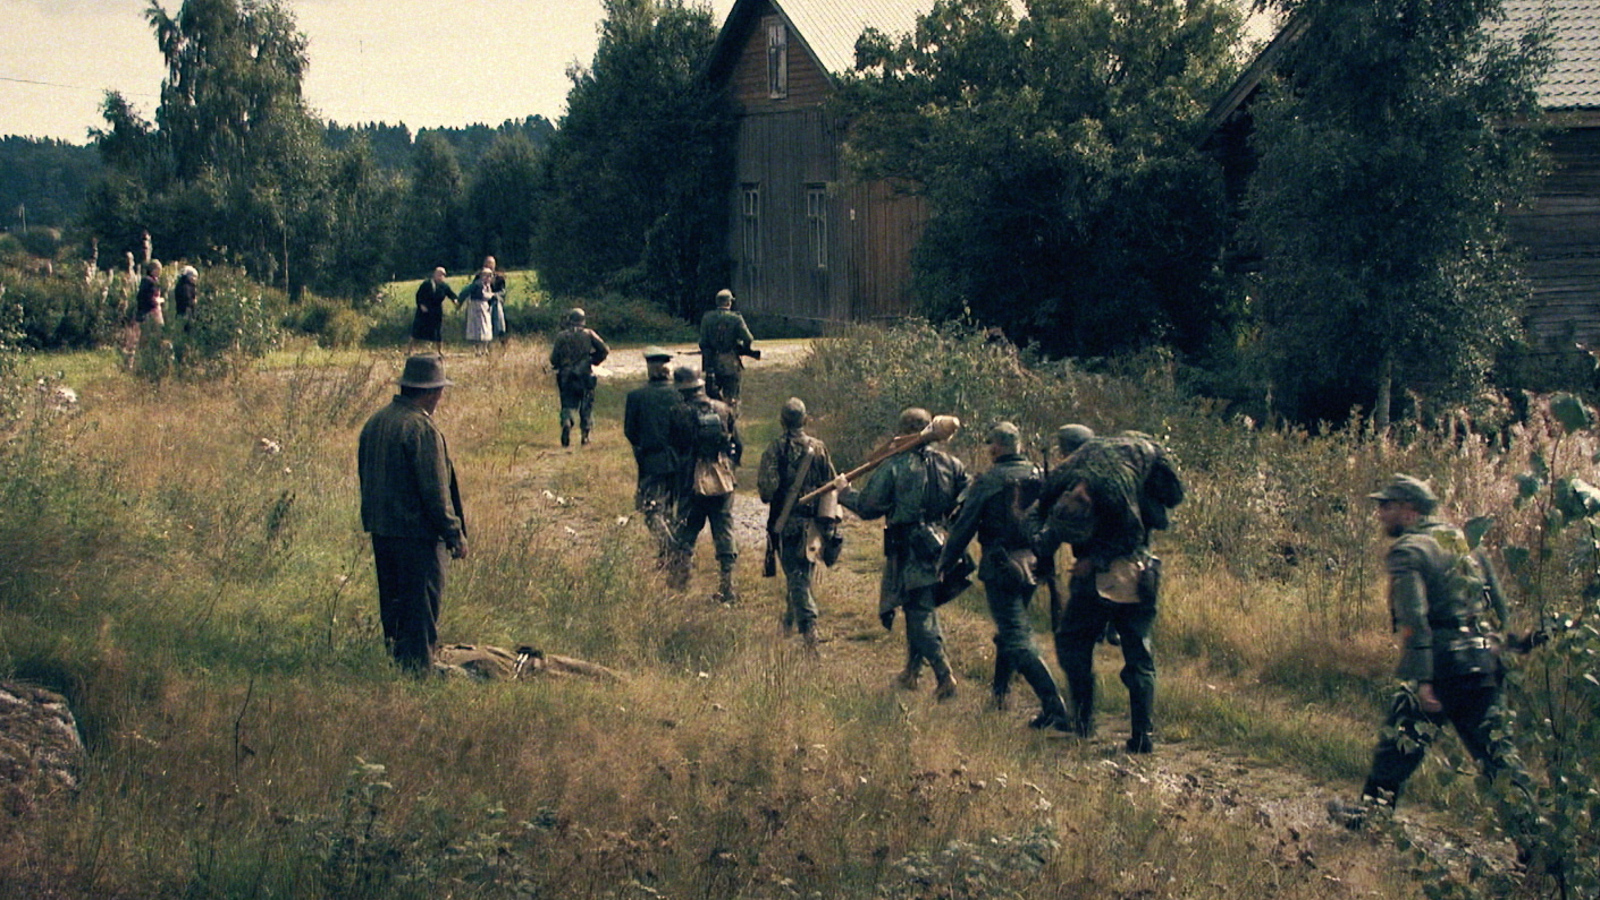 Kuvassa on sotilaita kävelemässä kohti kylää, jossa on harmaita rakennuksia molemmin puolin pientä tietä.   